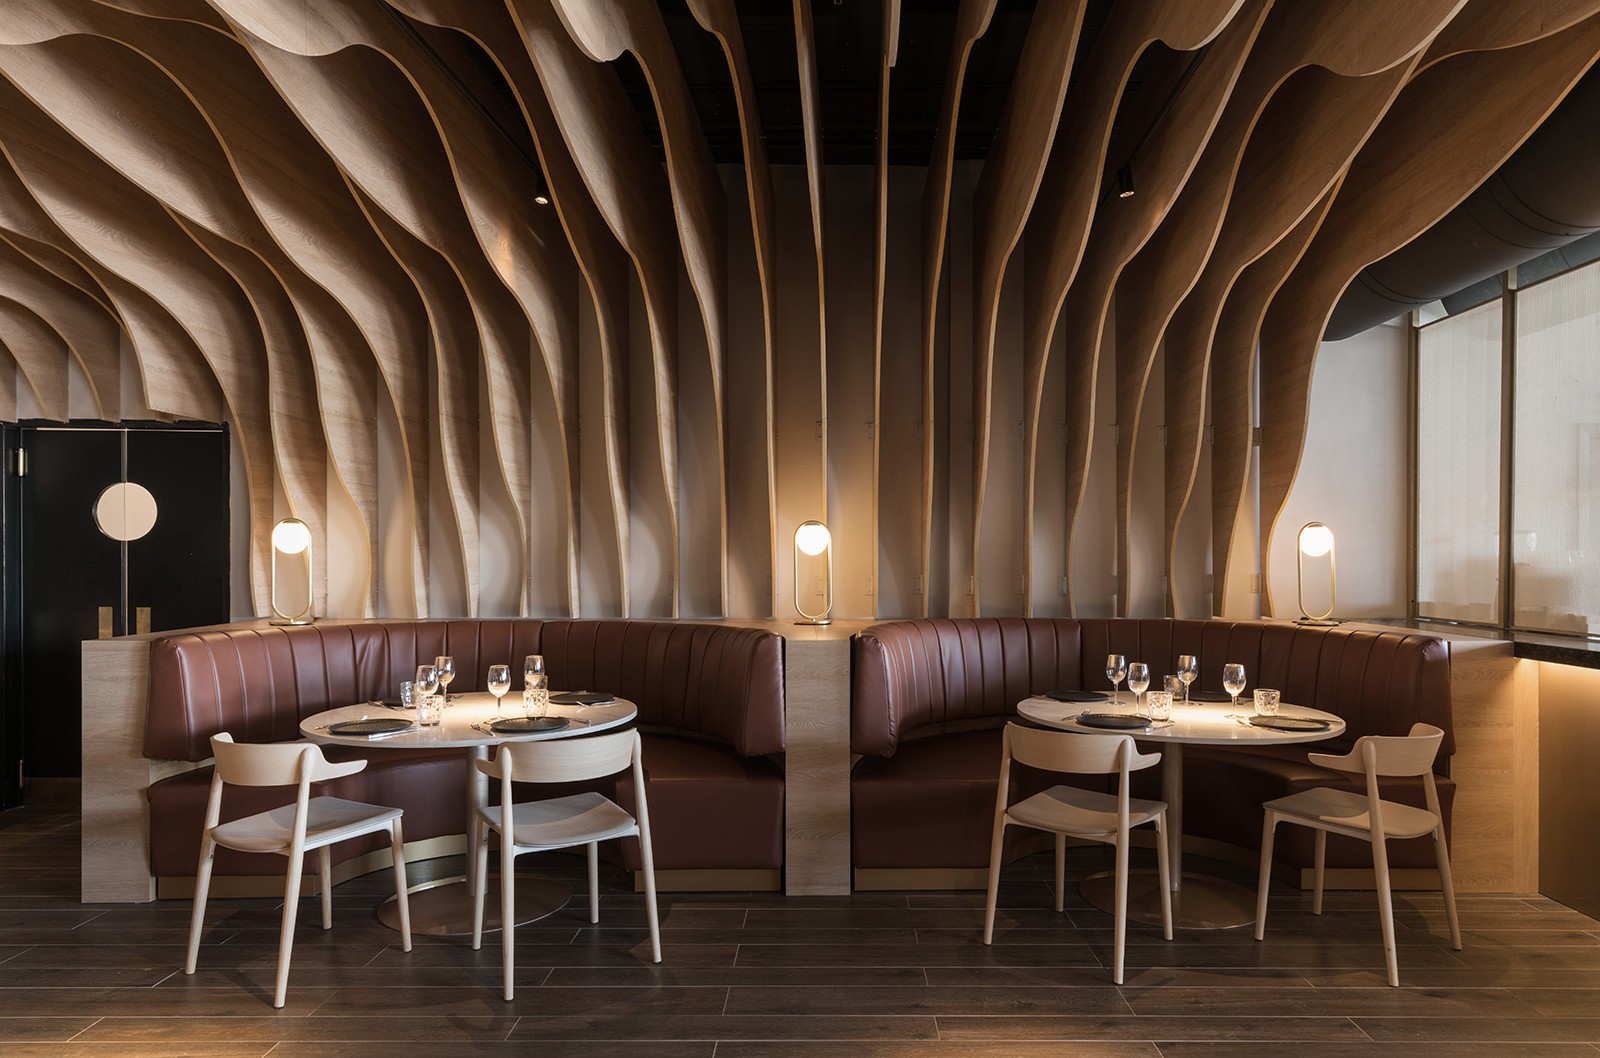 Restaurante espanhol possui arquitetura inspirada em dragão de 100 cabeças